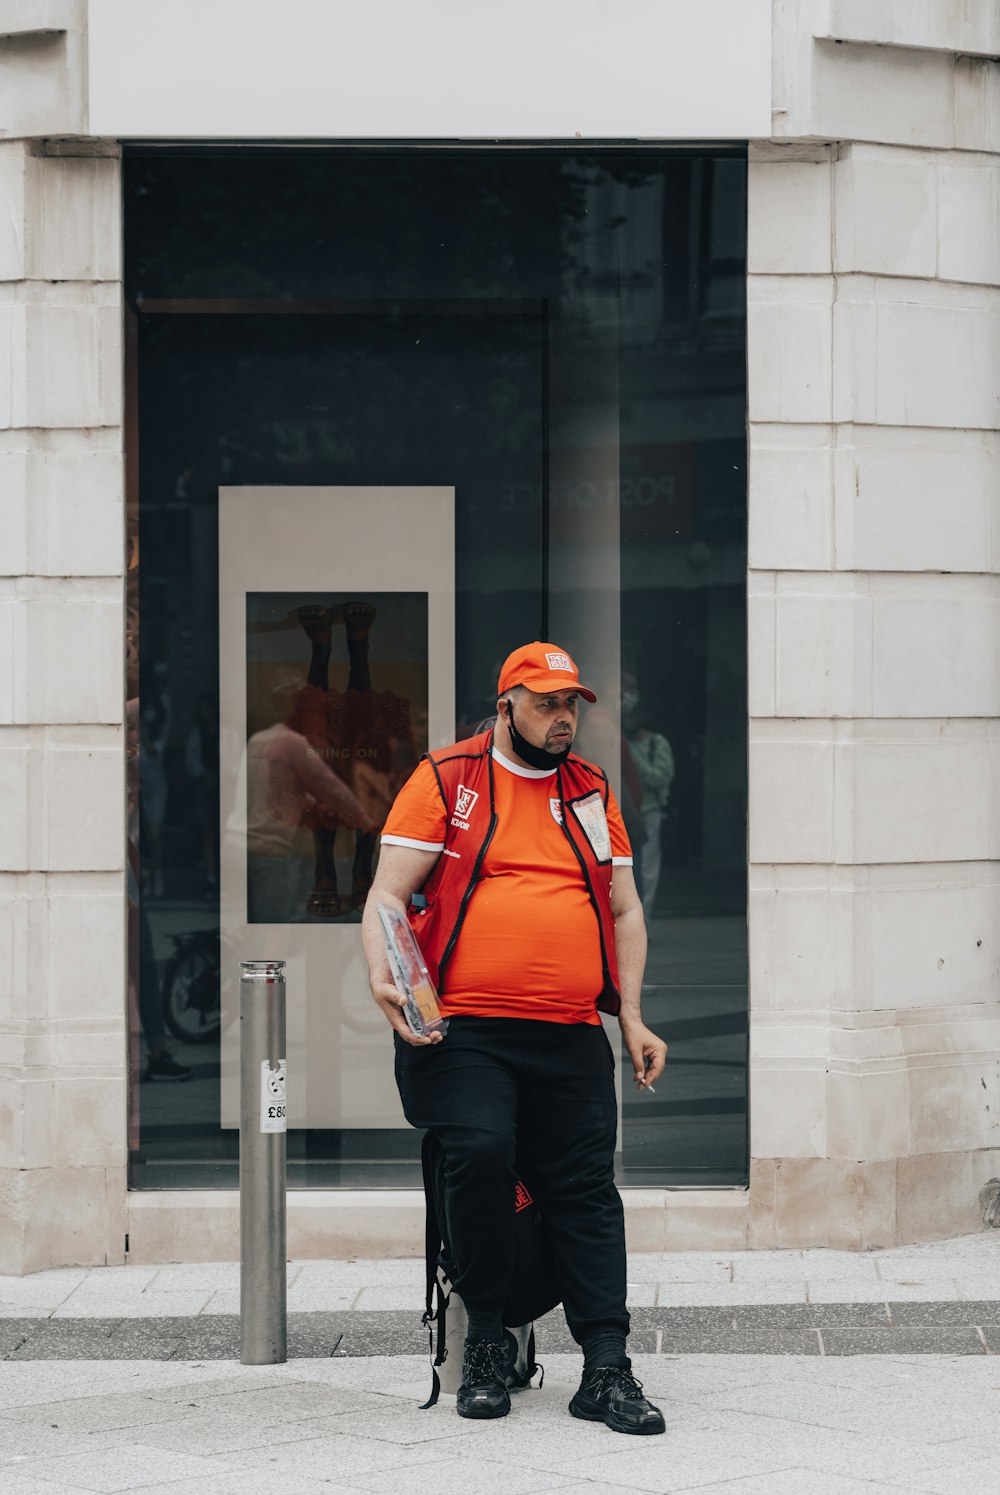 Un uomo con un giubbotto arancione sta camminando per strada